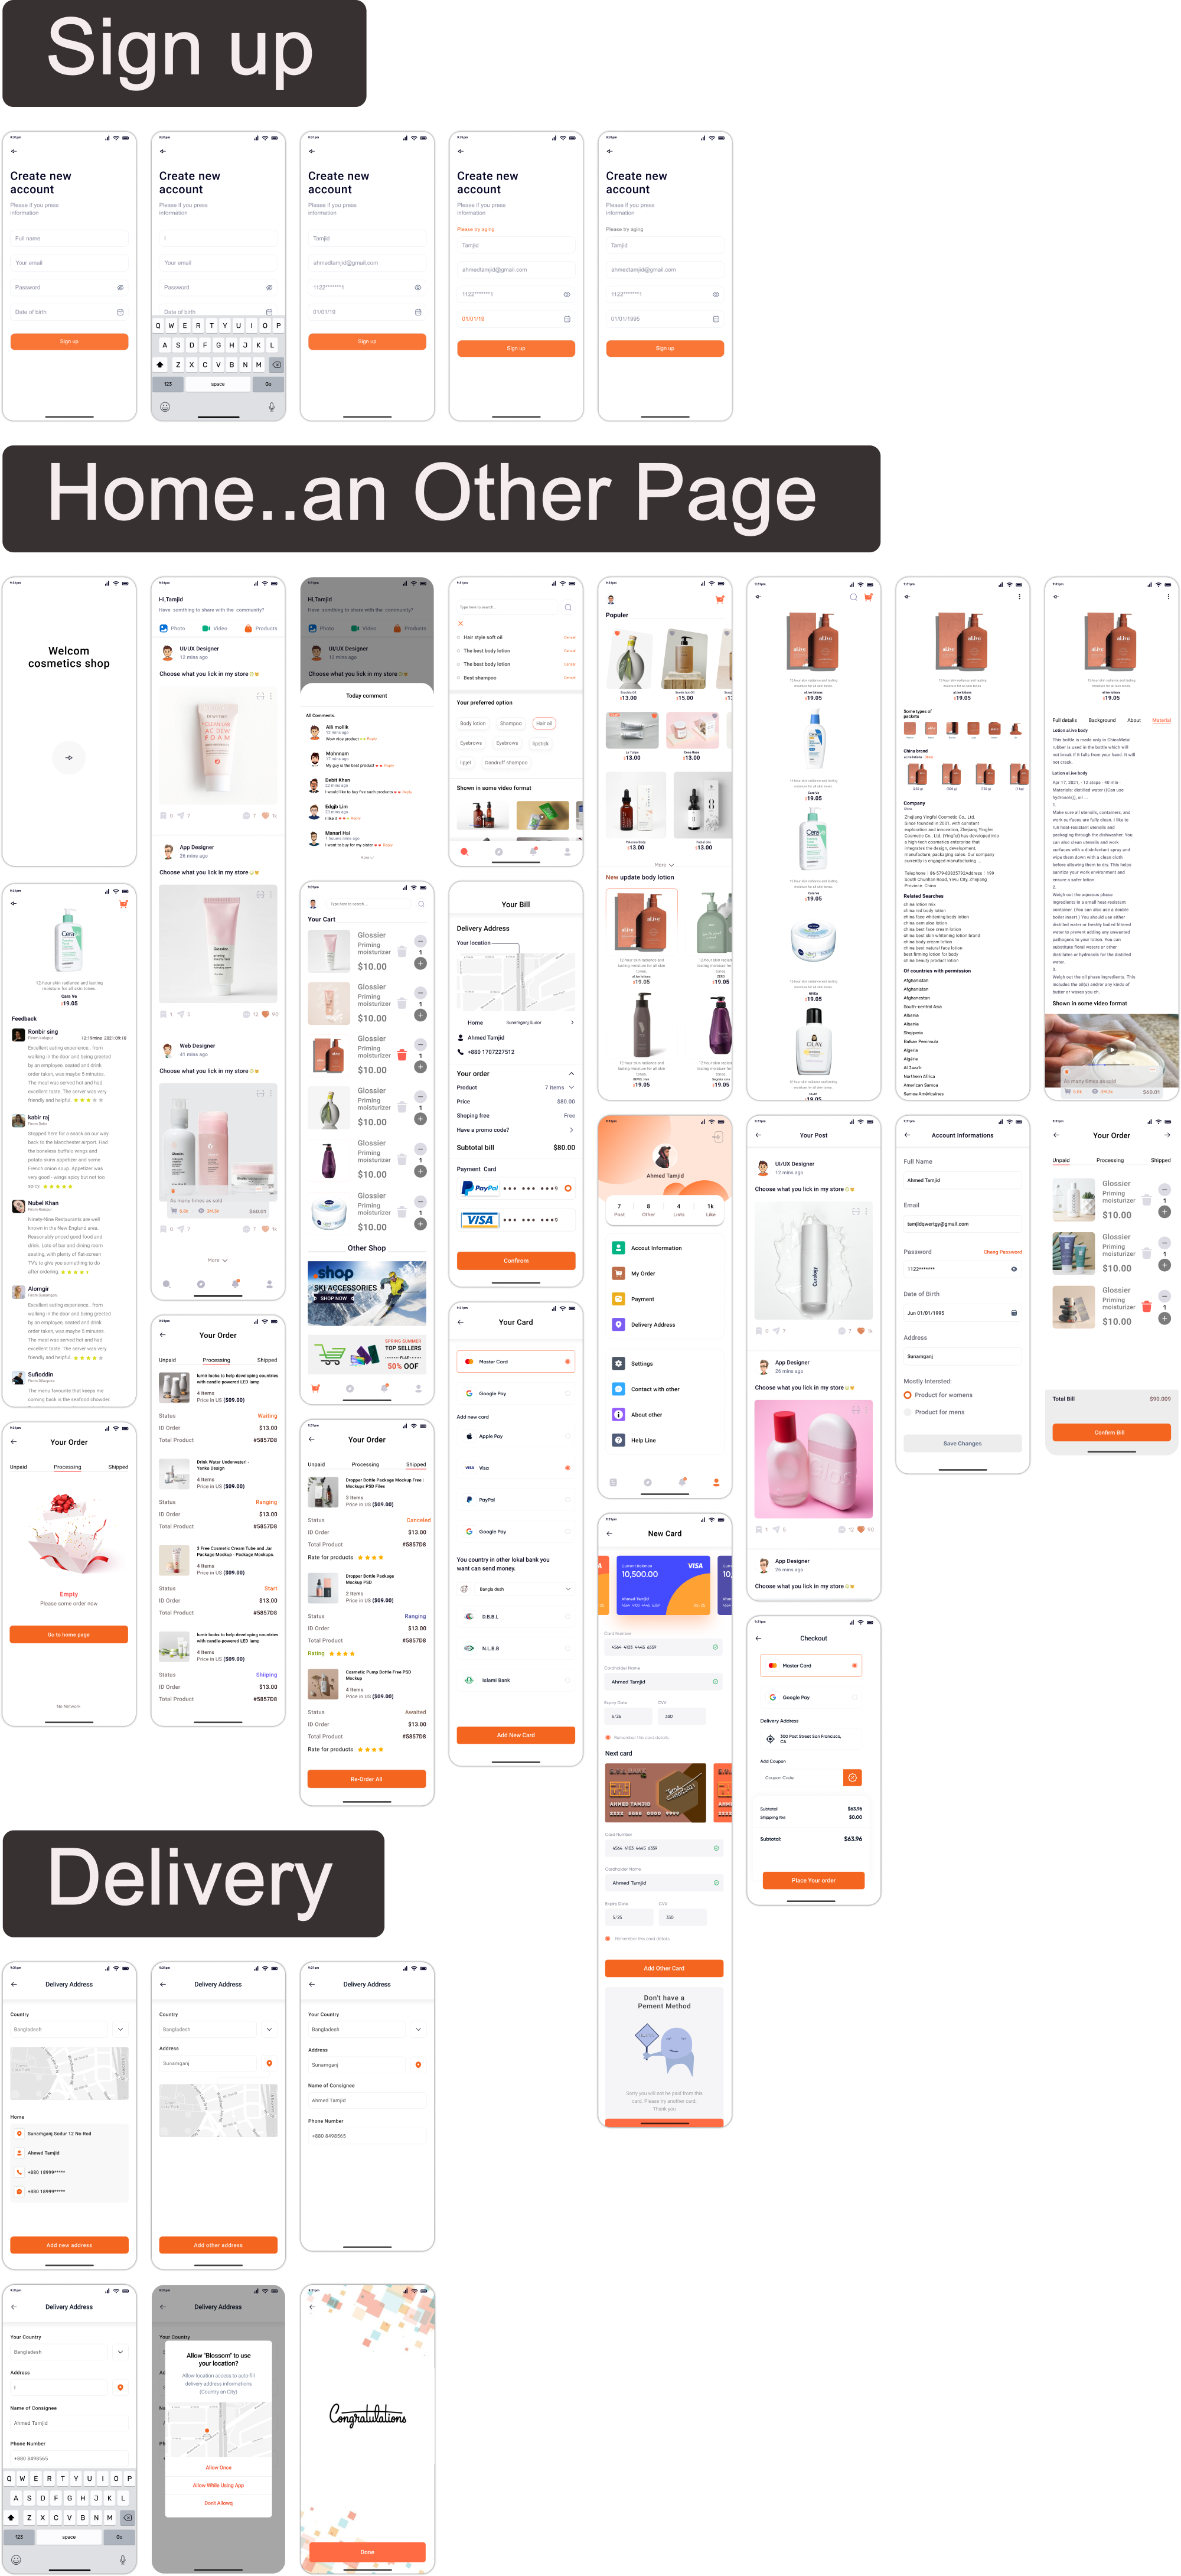 化妆品电商app ui: 时尚简约的化妆品电商app界面设计模板下载 figma格式-UI/UX-到位啦UI